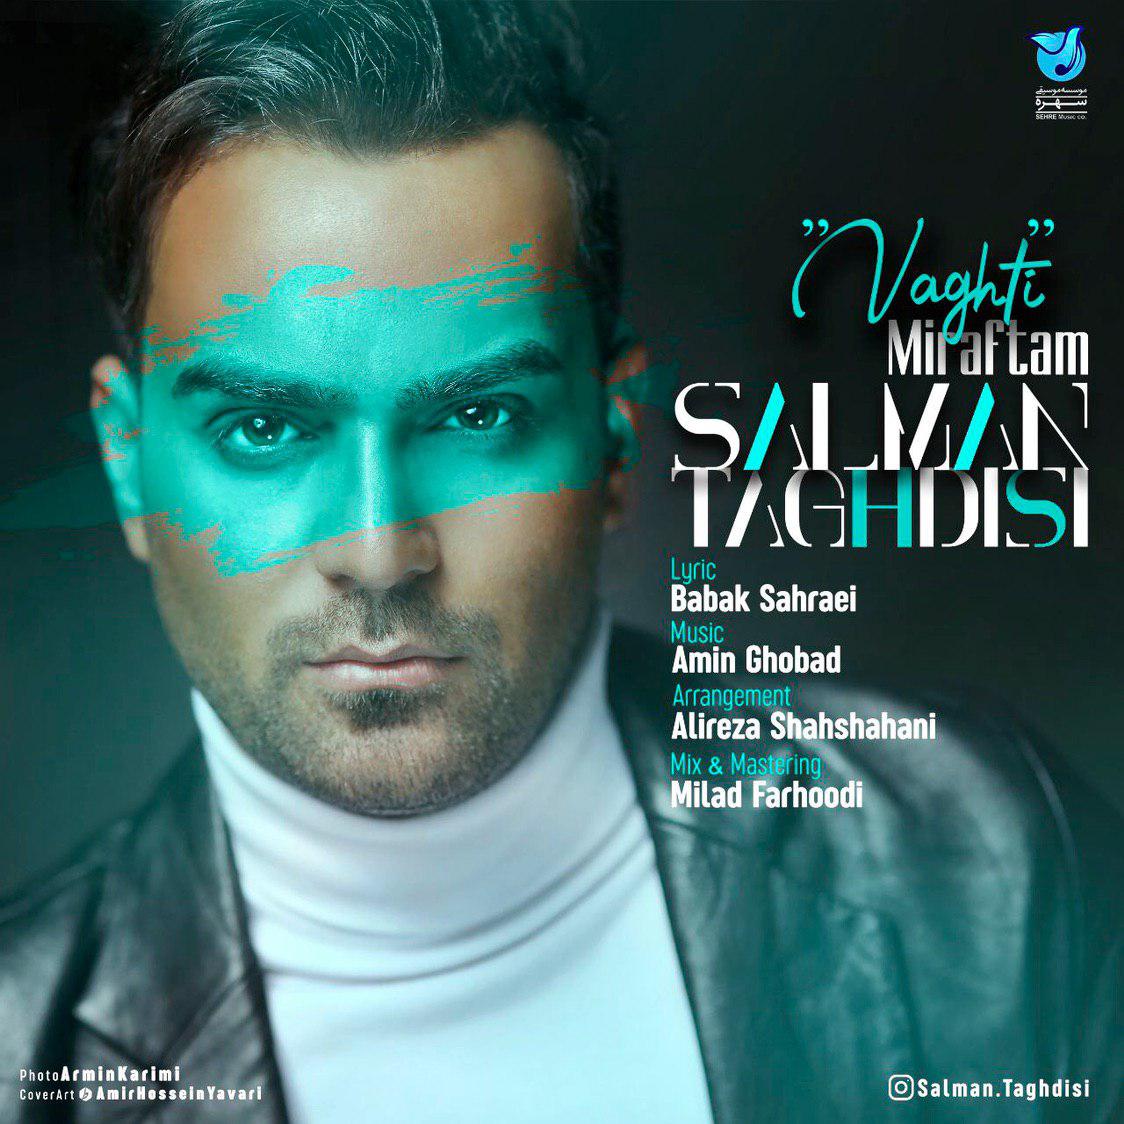  دانلود آهنگ جدید سلمان تقدیسی - وقتی میرفتم | Download New Music By Salman Taghdisi  - Vaghti Miraftam